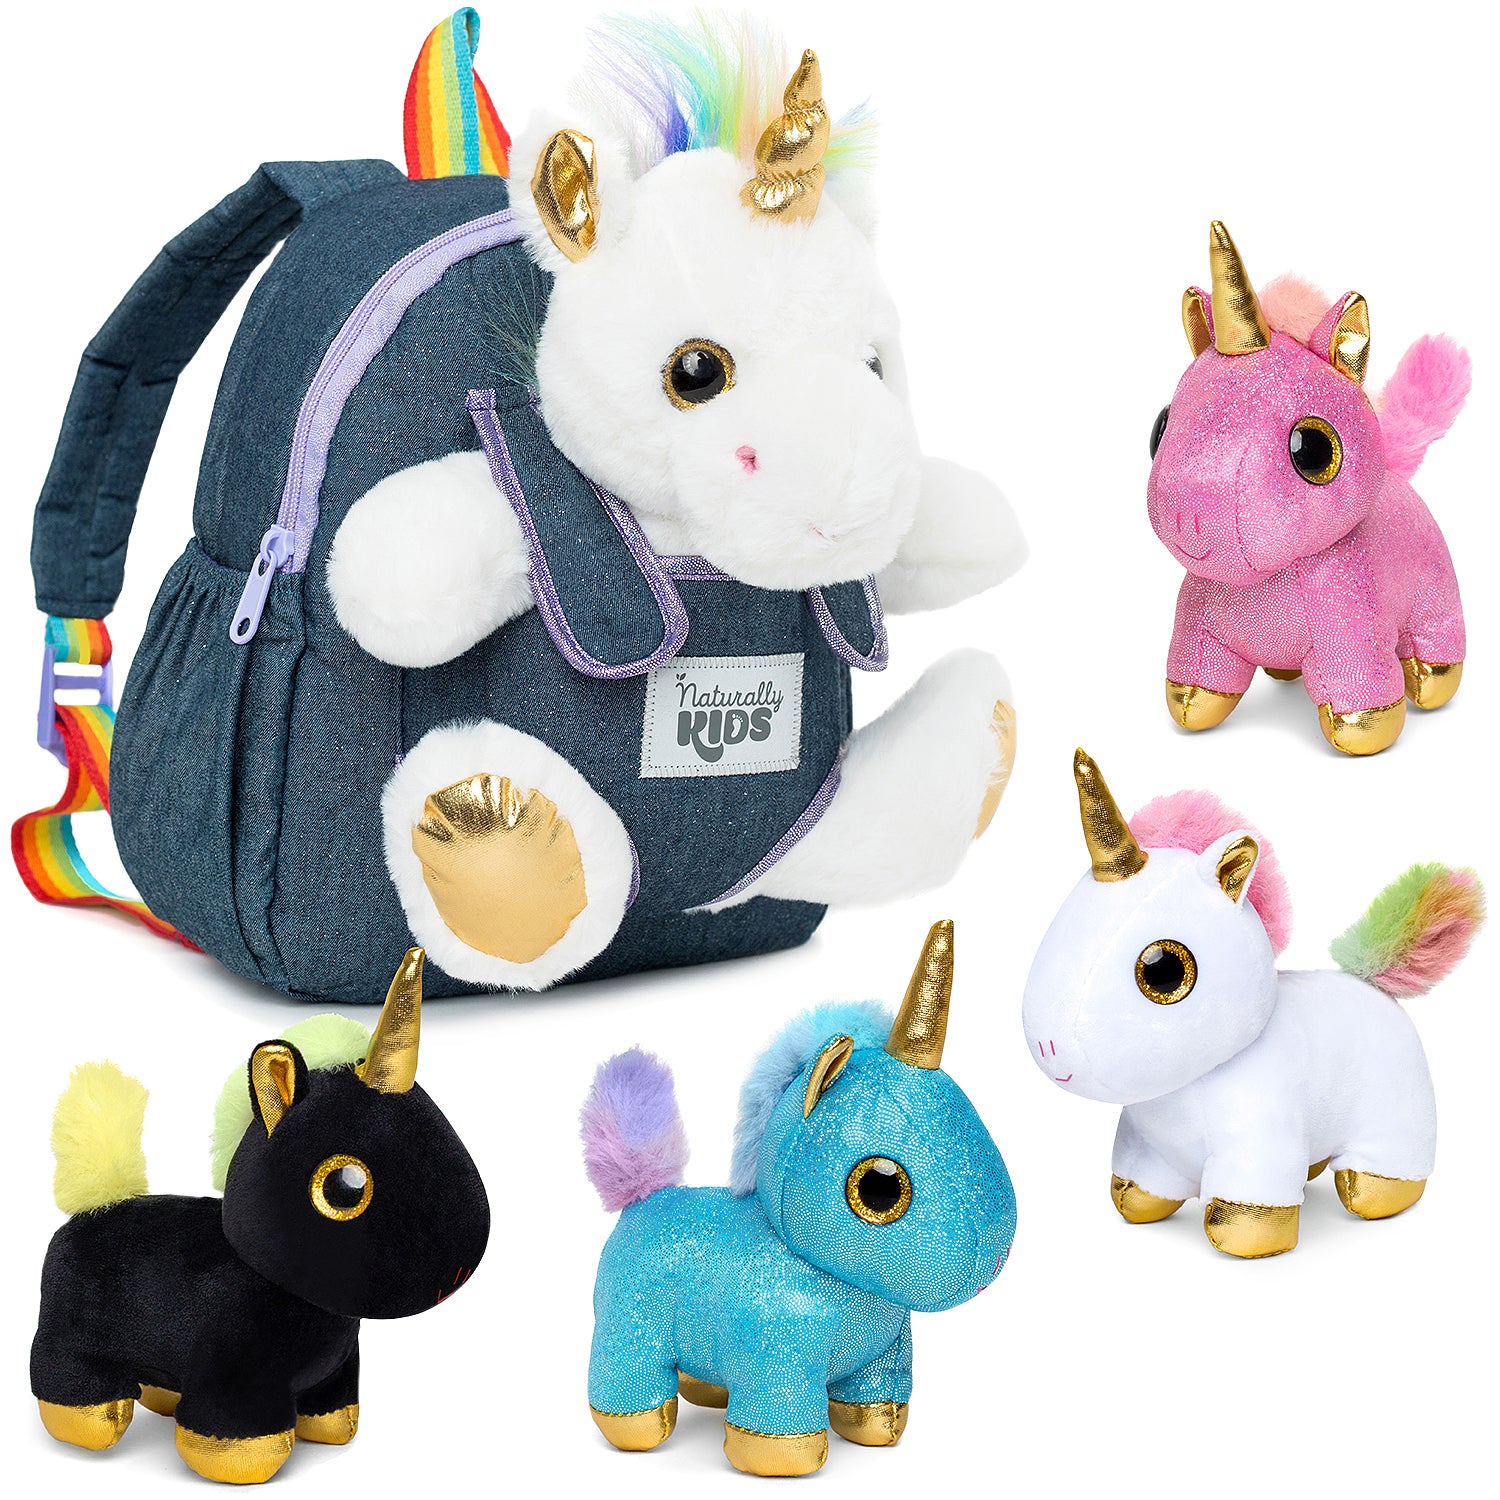  Backpacks For Girls Kindergarten, Unicorn Backpack For Girls  4-6, Backpack Kids 5-7, Unicorn Backpacks For Girls Age 6-8, Unicorn Gifts  Girls Age 6-8, Unicorn Toys Girls Age 5, Medium